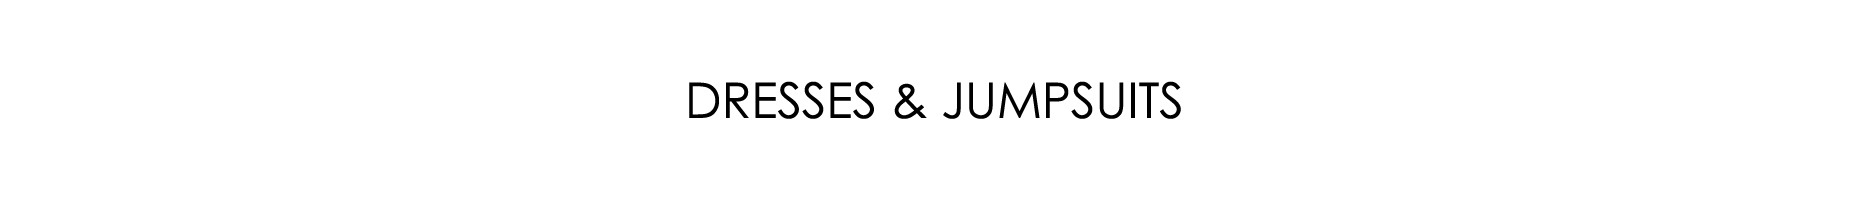 Dresses & Jumpsuits